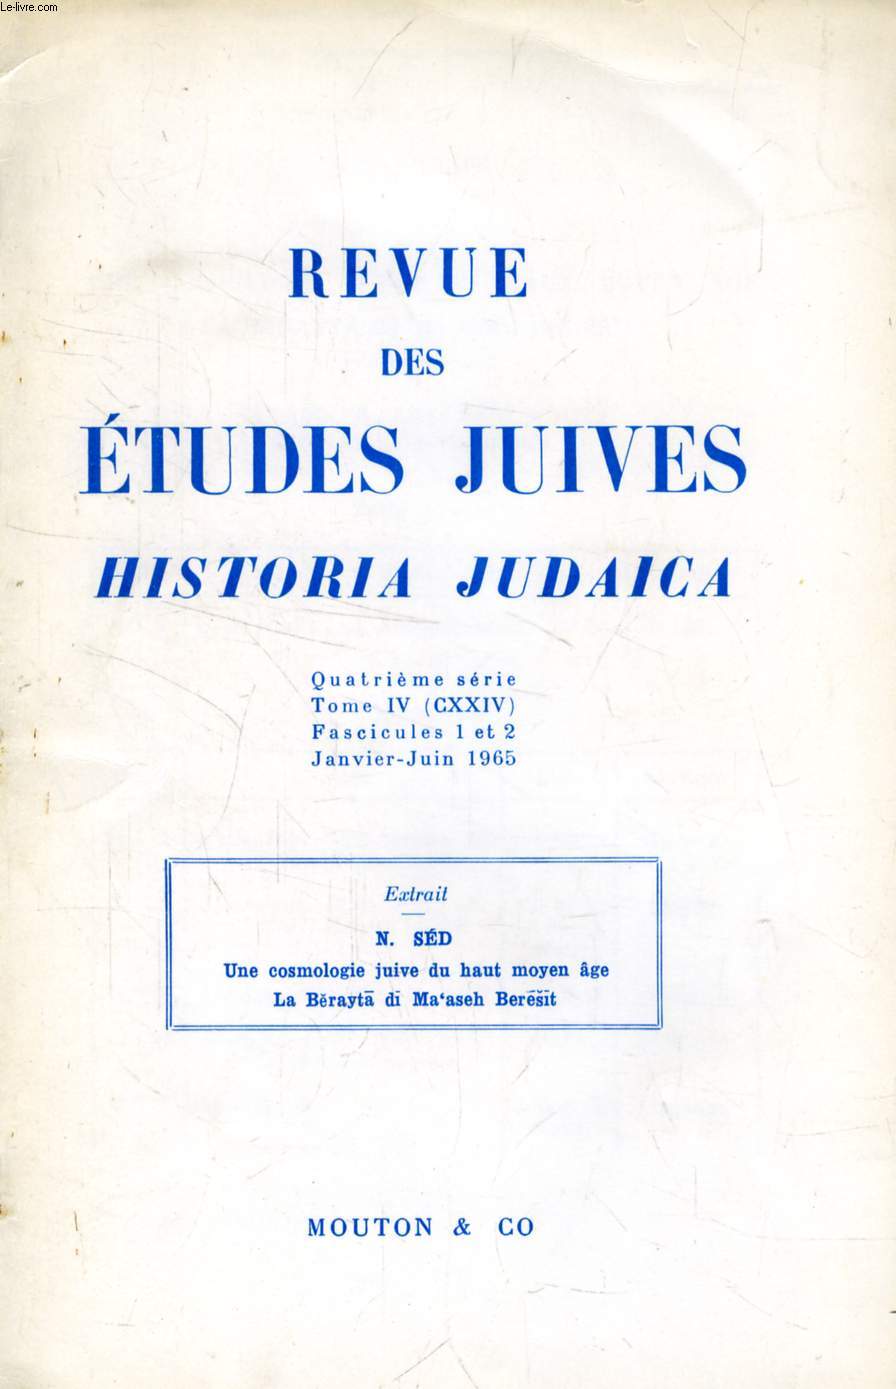 REVUE DES ETUDES JUIVES, HISTORIA JUDAICA, 4e SERIE, TOME IV (CXXIV), FASC. 1 ET 2, JAN-JUIN 1965, EXTRAIT, UNE COSMOLOGIE JUIVE DU HAUT MOYEN AGE, LA BERAYTA DI MA'ASEH BERESIT